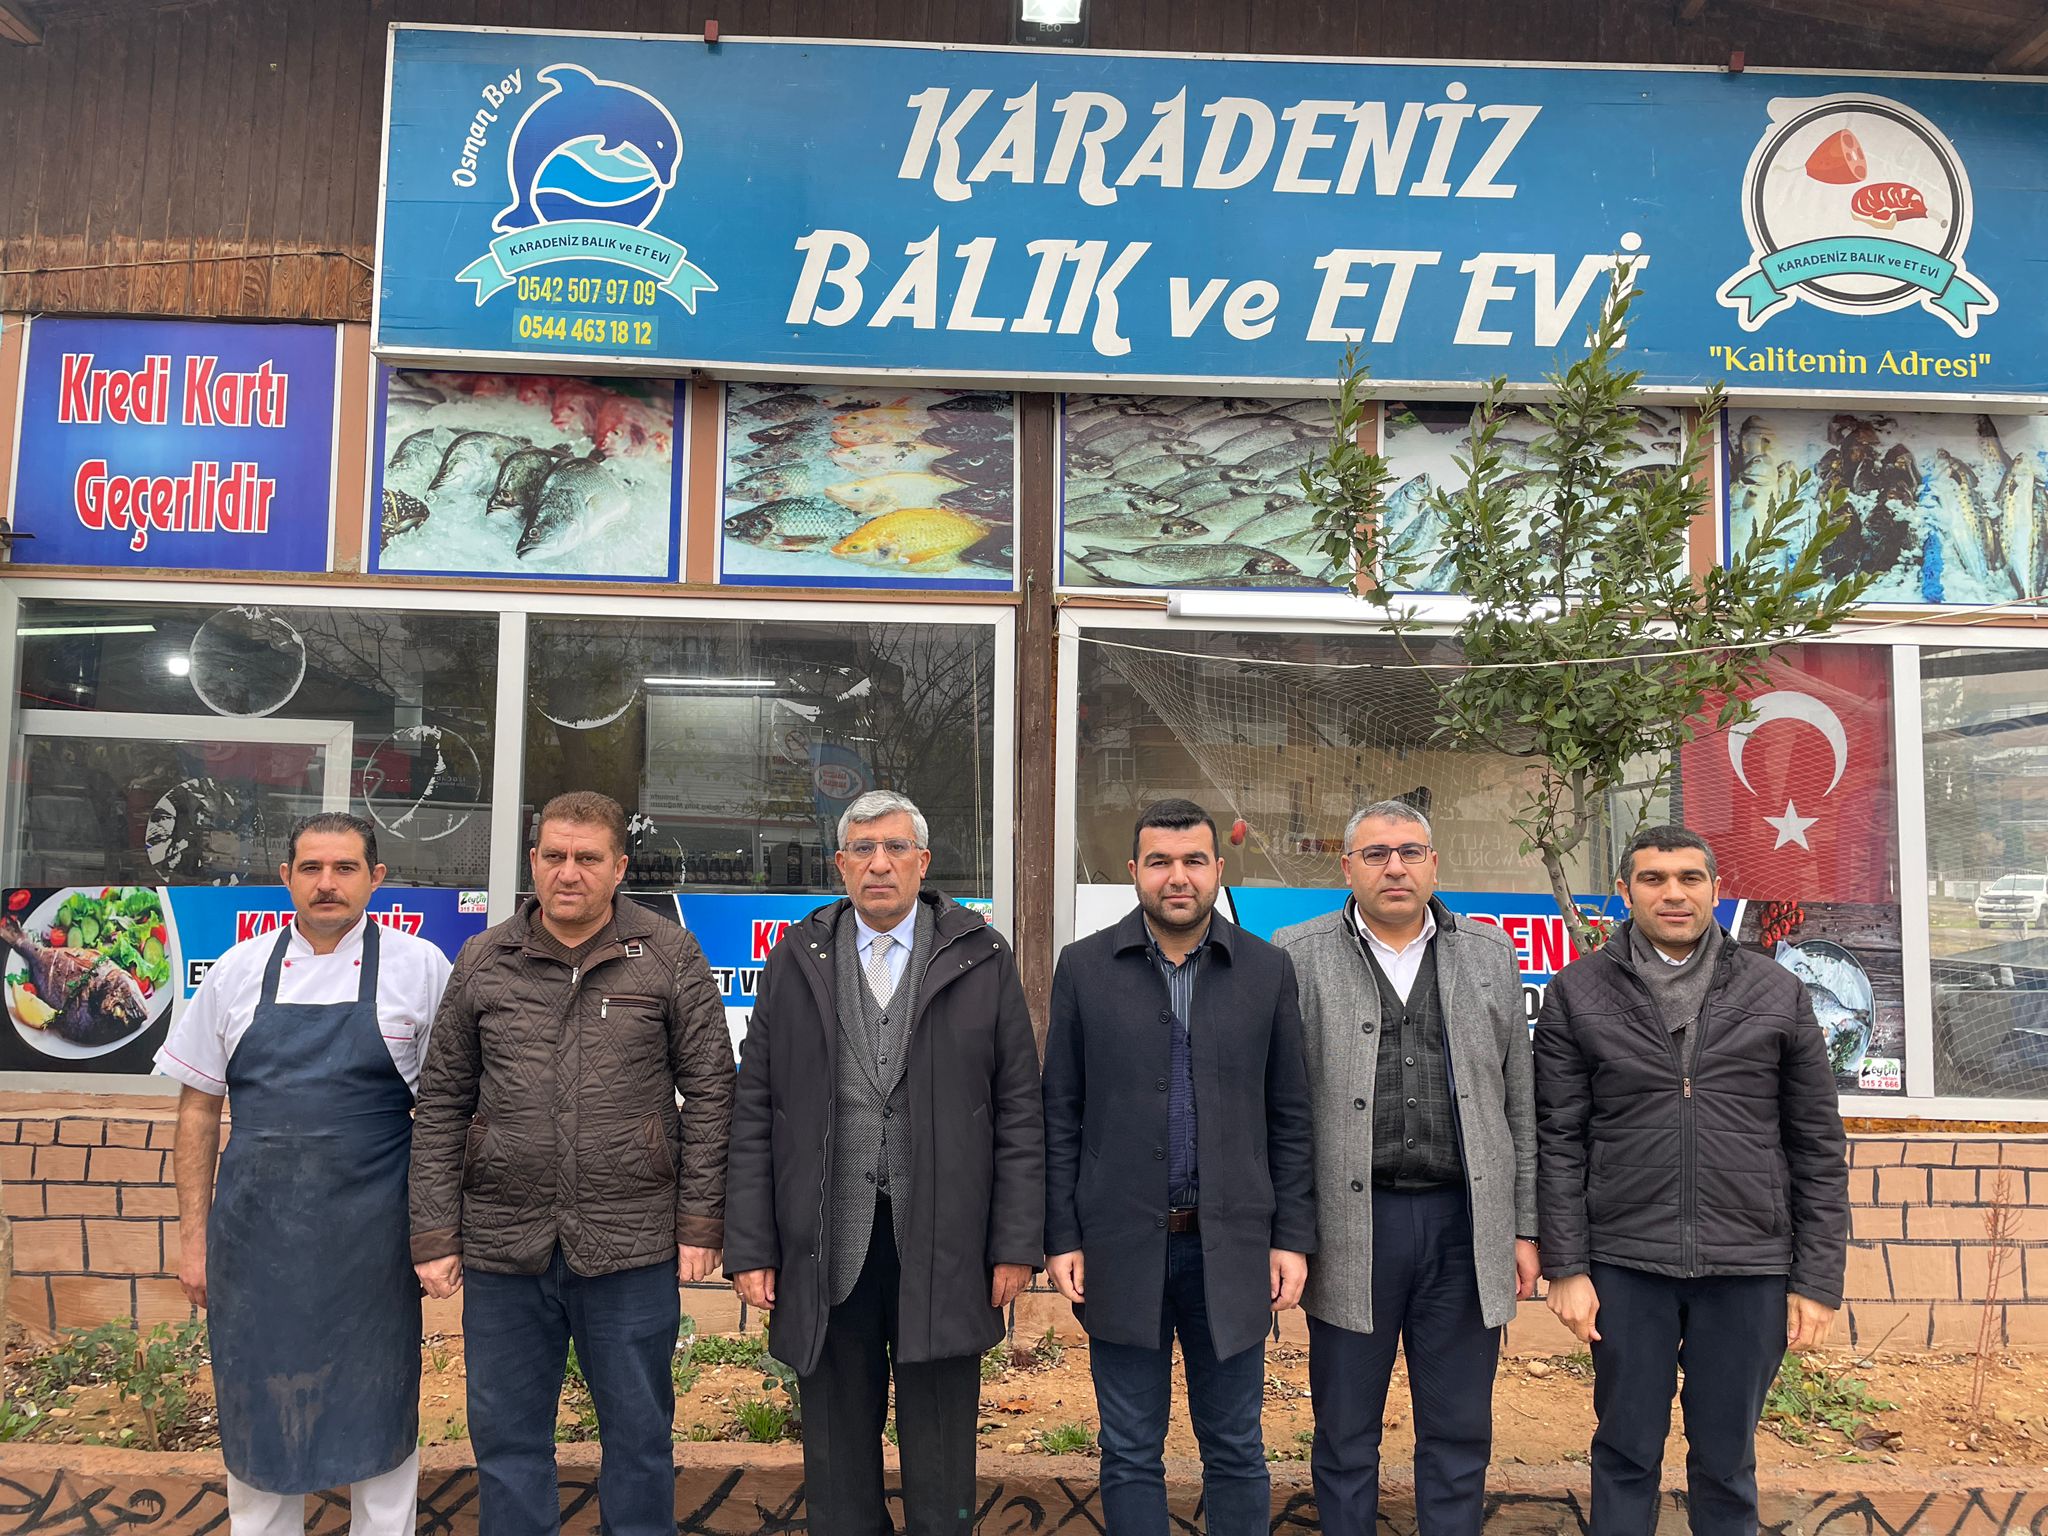 İl Başkanımız ve Başkan Yardımcılarımız, Şanlıurfa'mızın Meşhur Karadeniz Balıkçısı ve Partimizin İl Başkan Yardımcısı Mustafa Helvacı Beyefendiyi İşyerinde ziyaret ettiler.